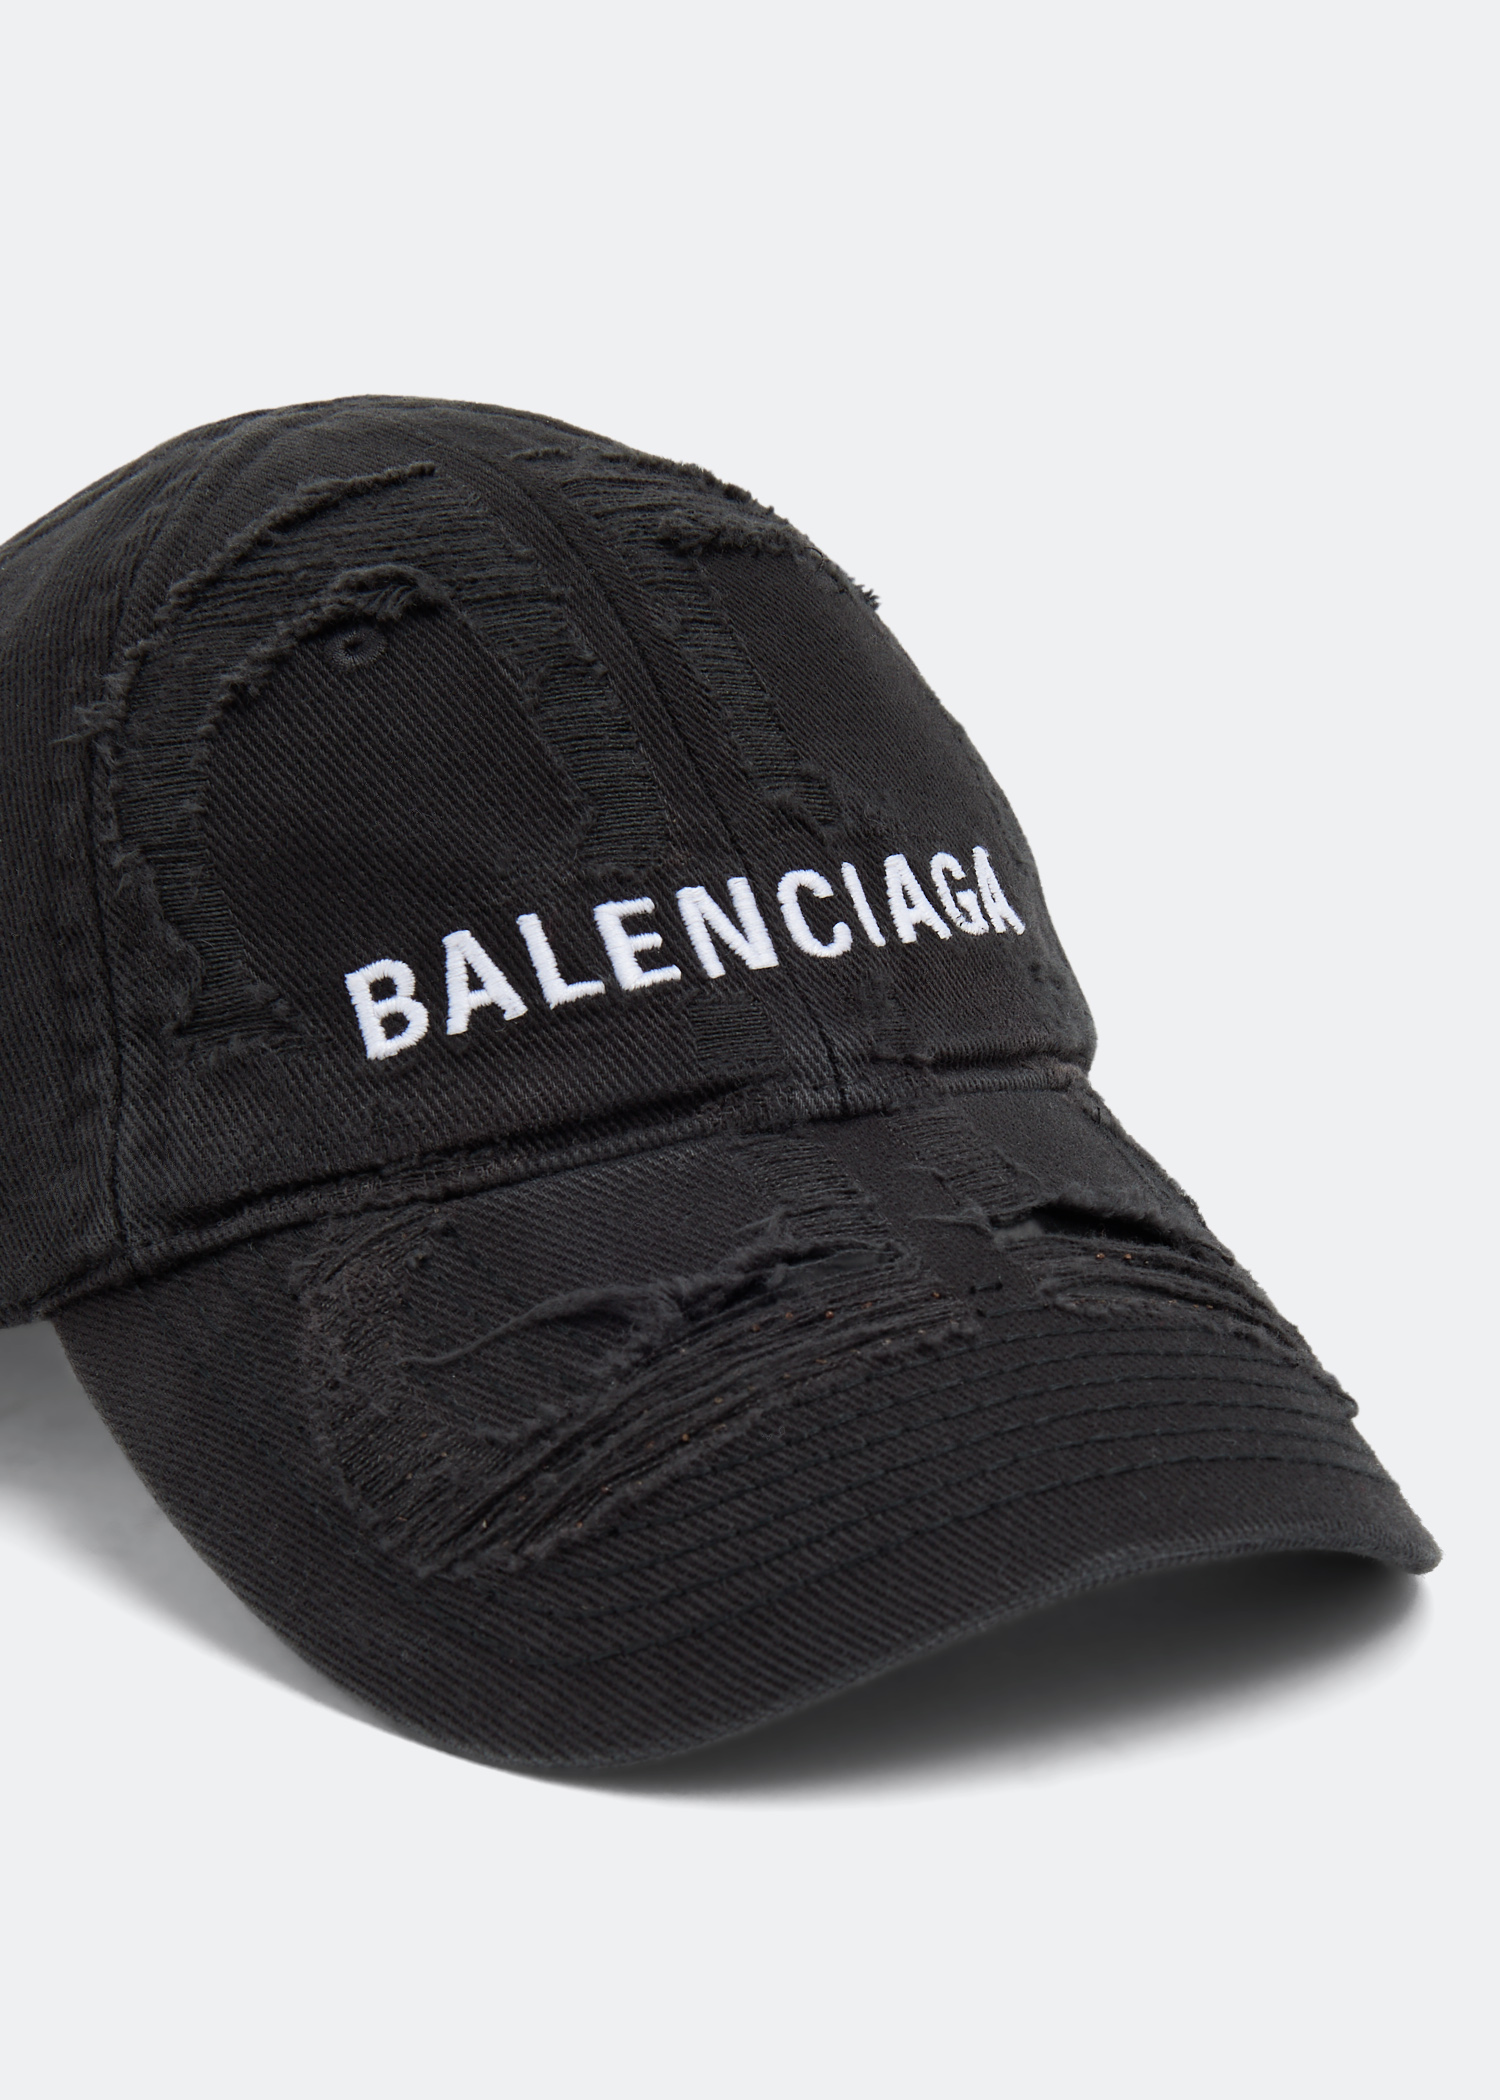 Balenciaga BB Laser Destroyed cap for Men - Black in UAE | Level Shoes